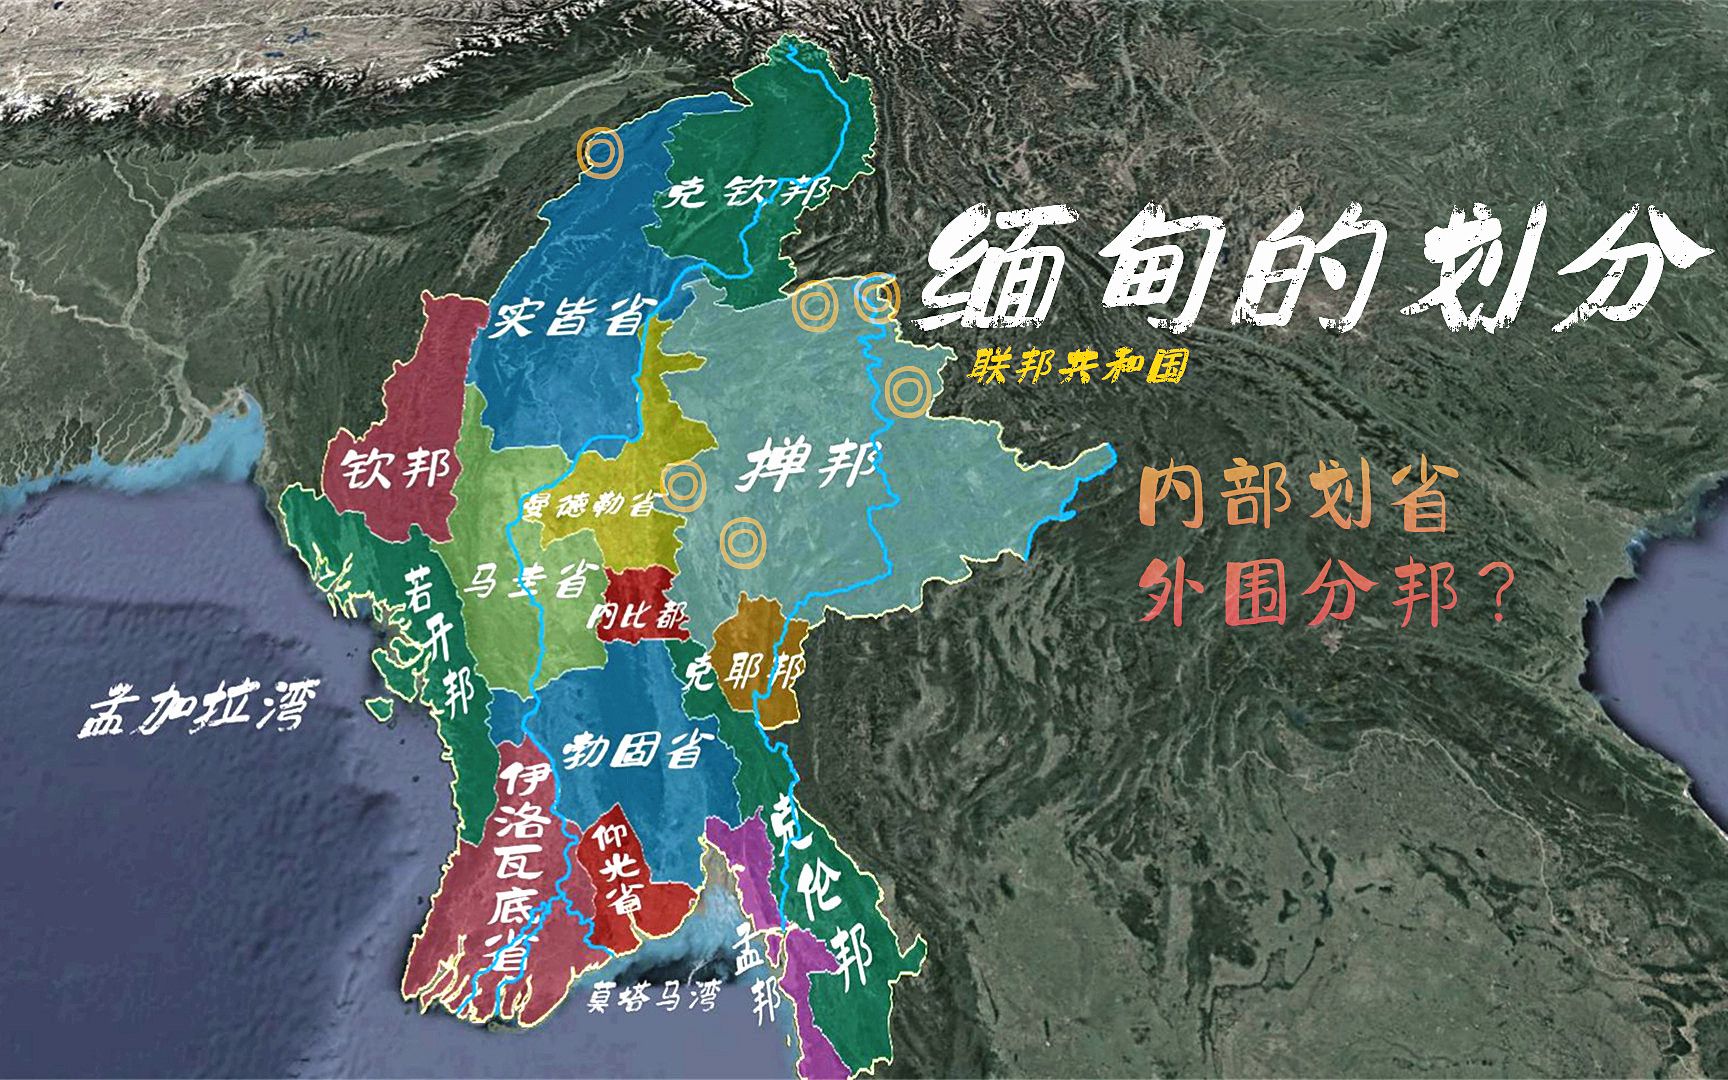 缅甸的划分,主体民族划省,少数民族分邦